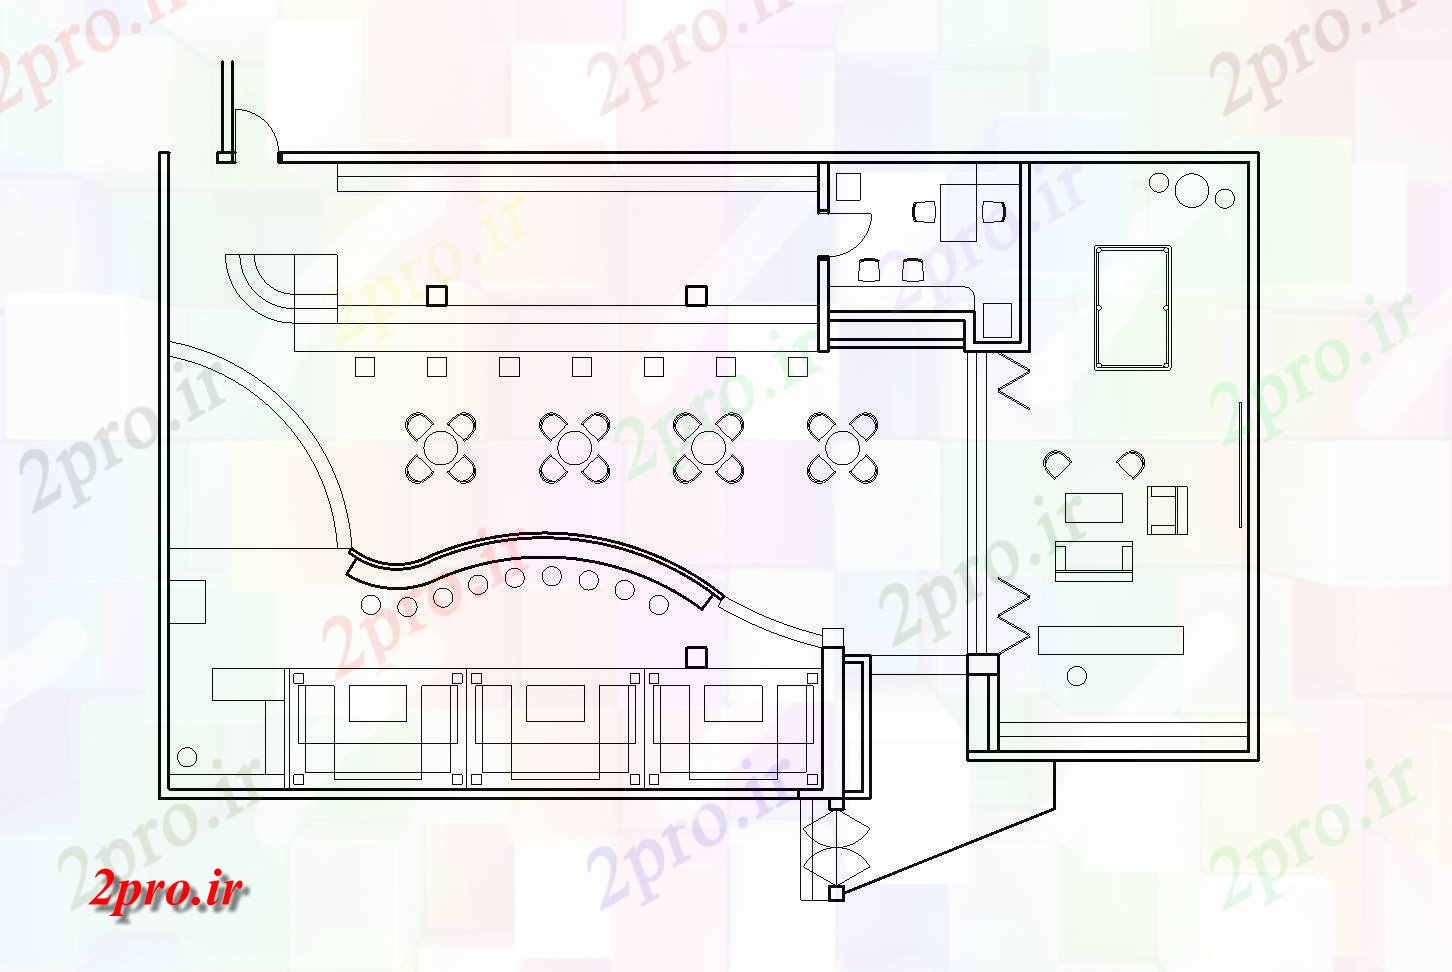 دانلود نقشه باشگاه طرحی از این باشگاه با ابعاد جزئیات 7 در 11 متر (کد85629)